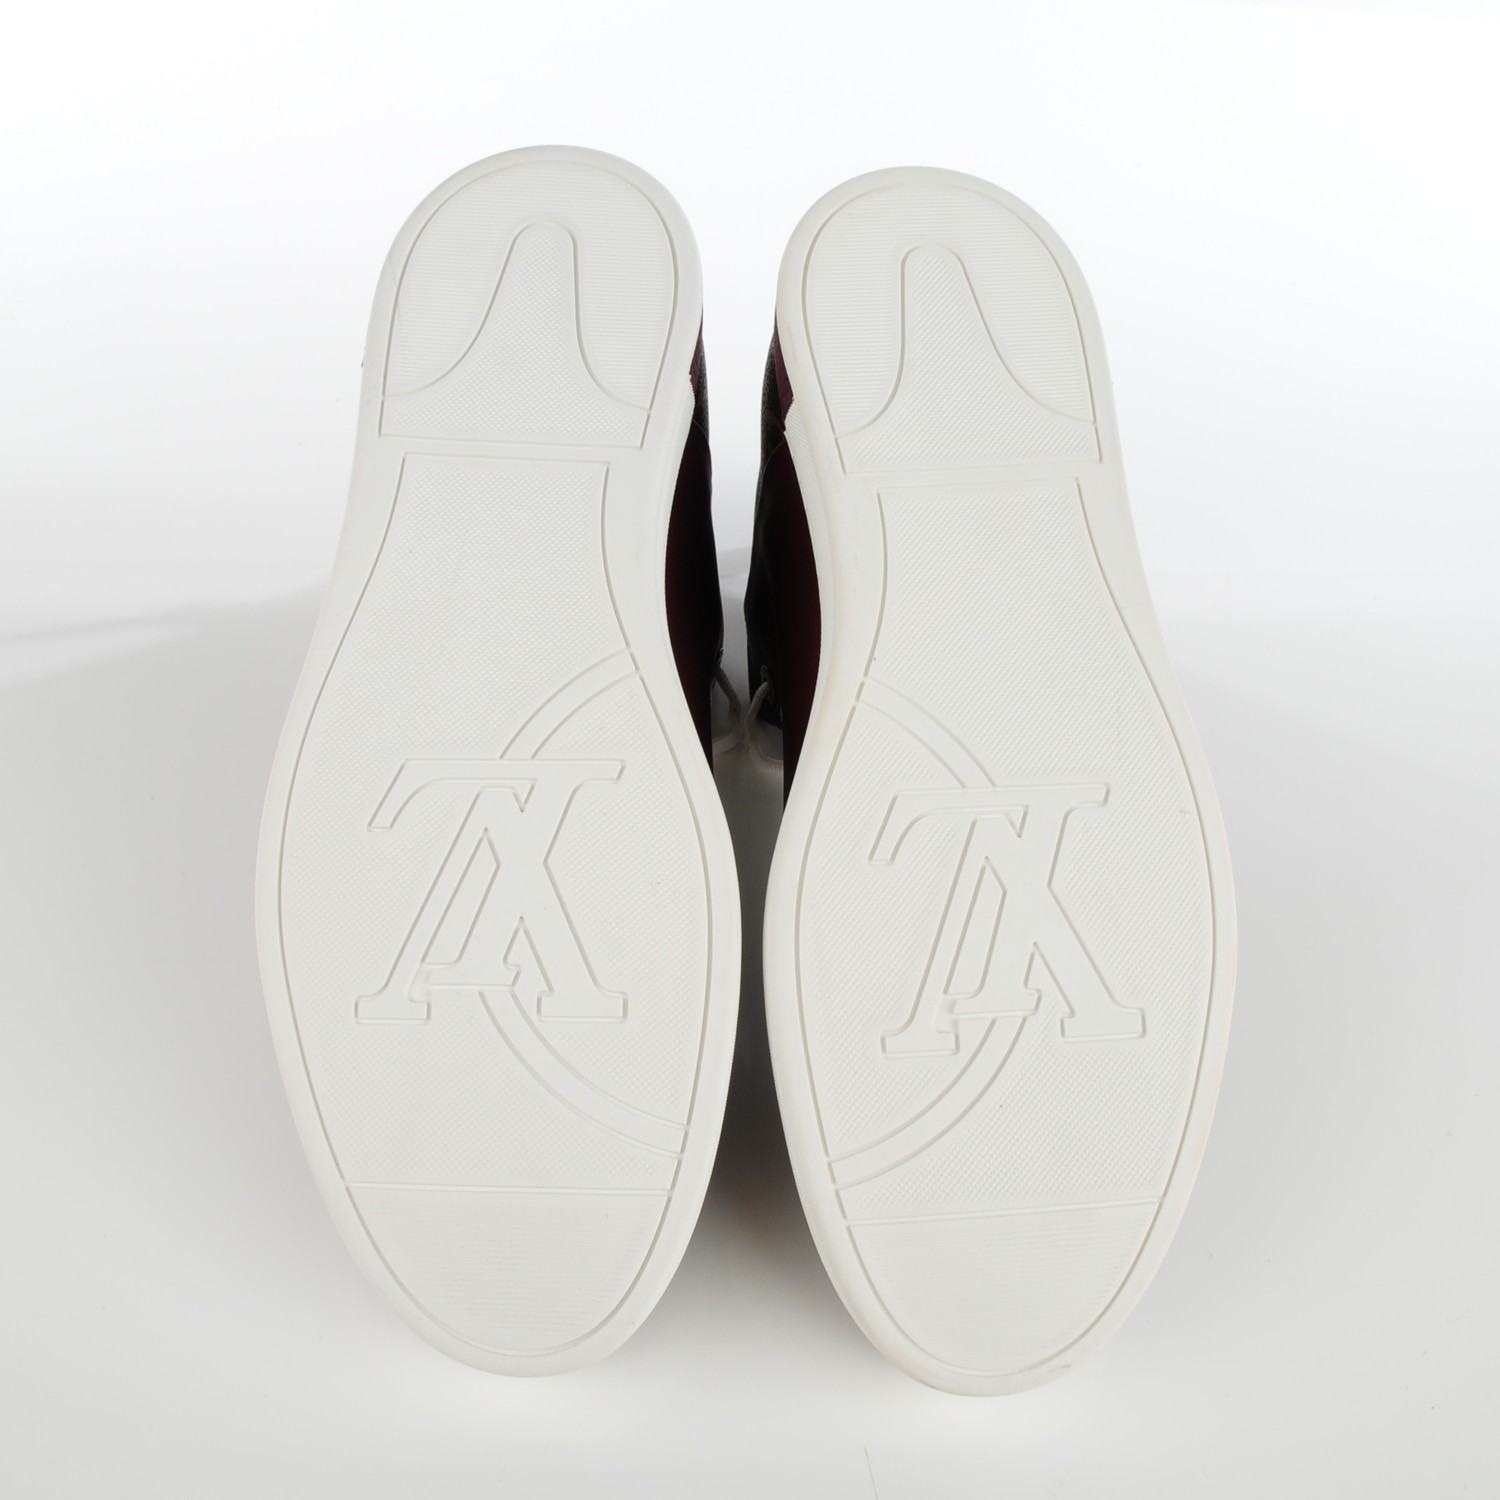 LOUIS VUITTON Mens Monogram Calfskin Line Up Sneaker Boots 8 Bordeaux 133499